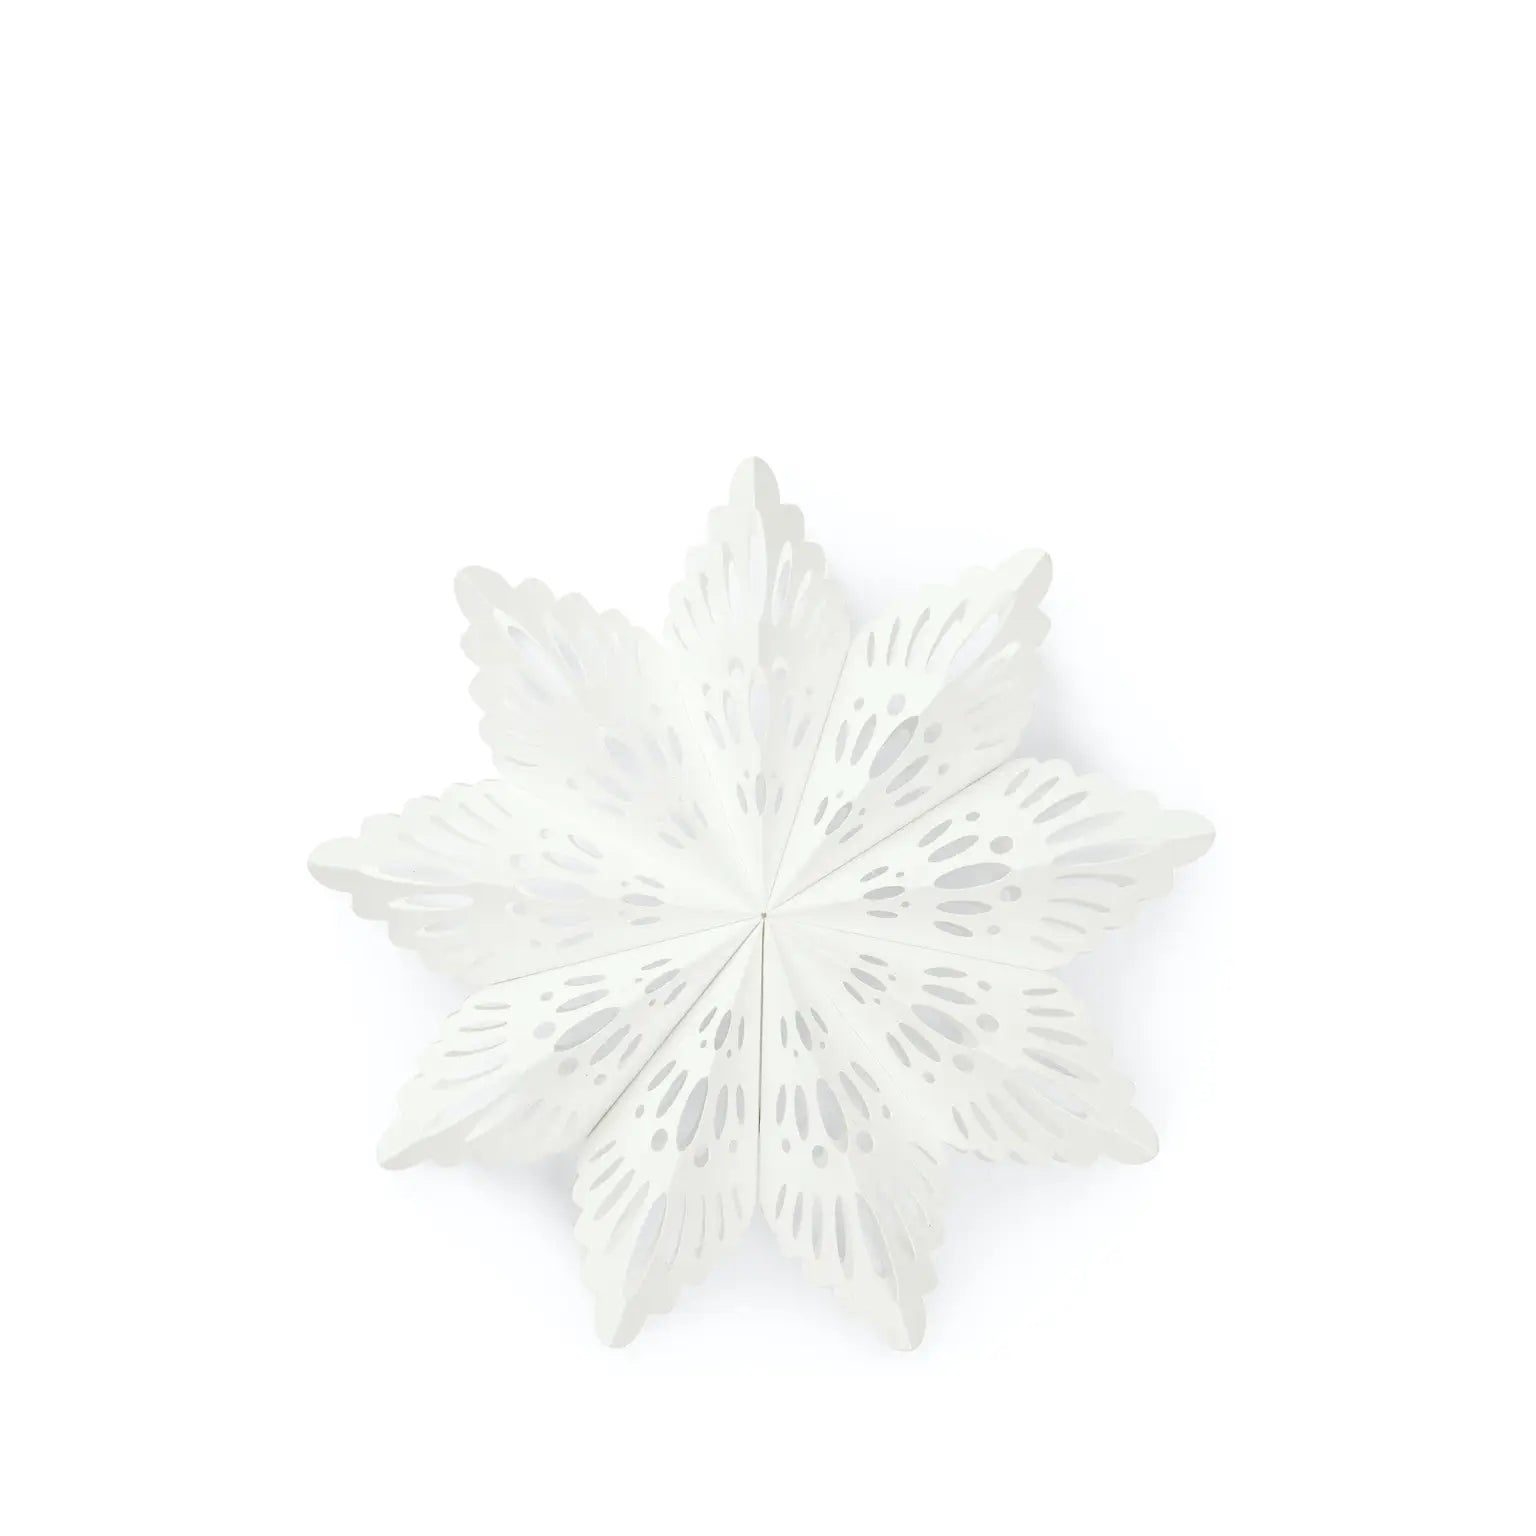 SUSTAIN Snowflake, small white